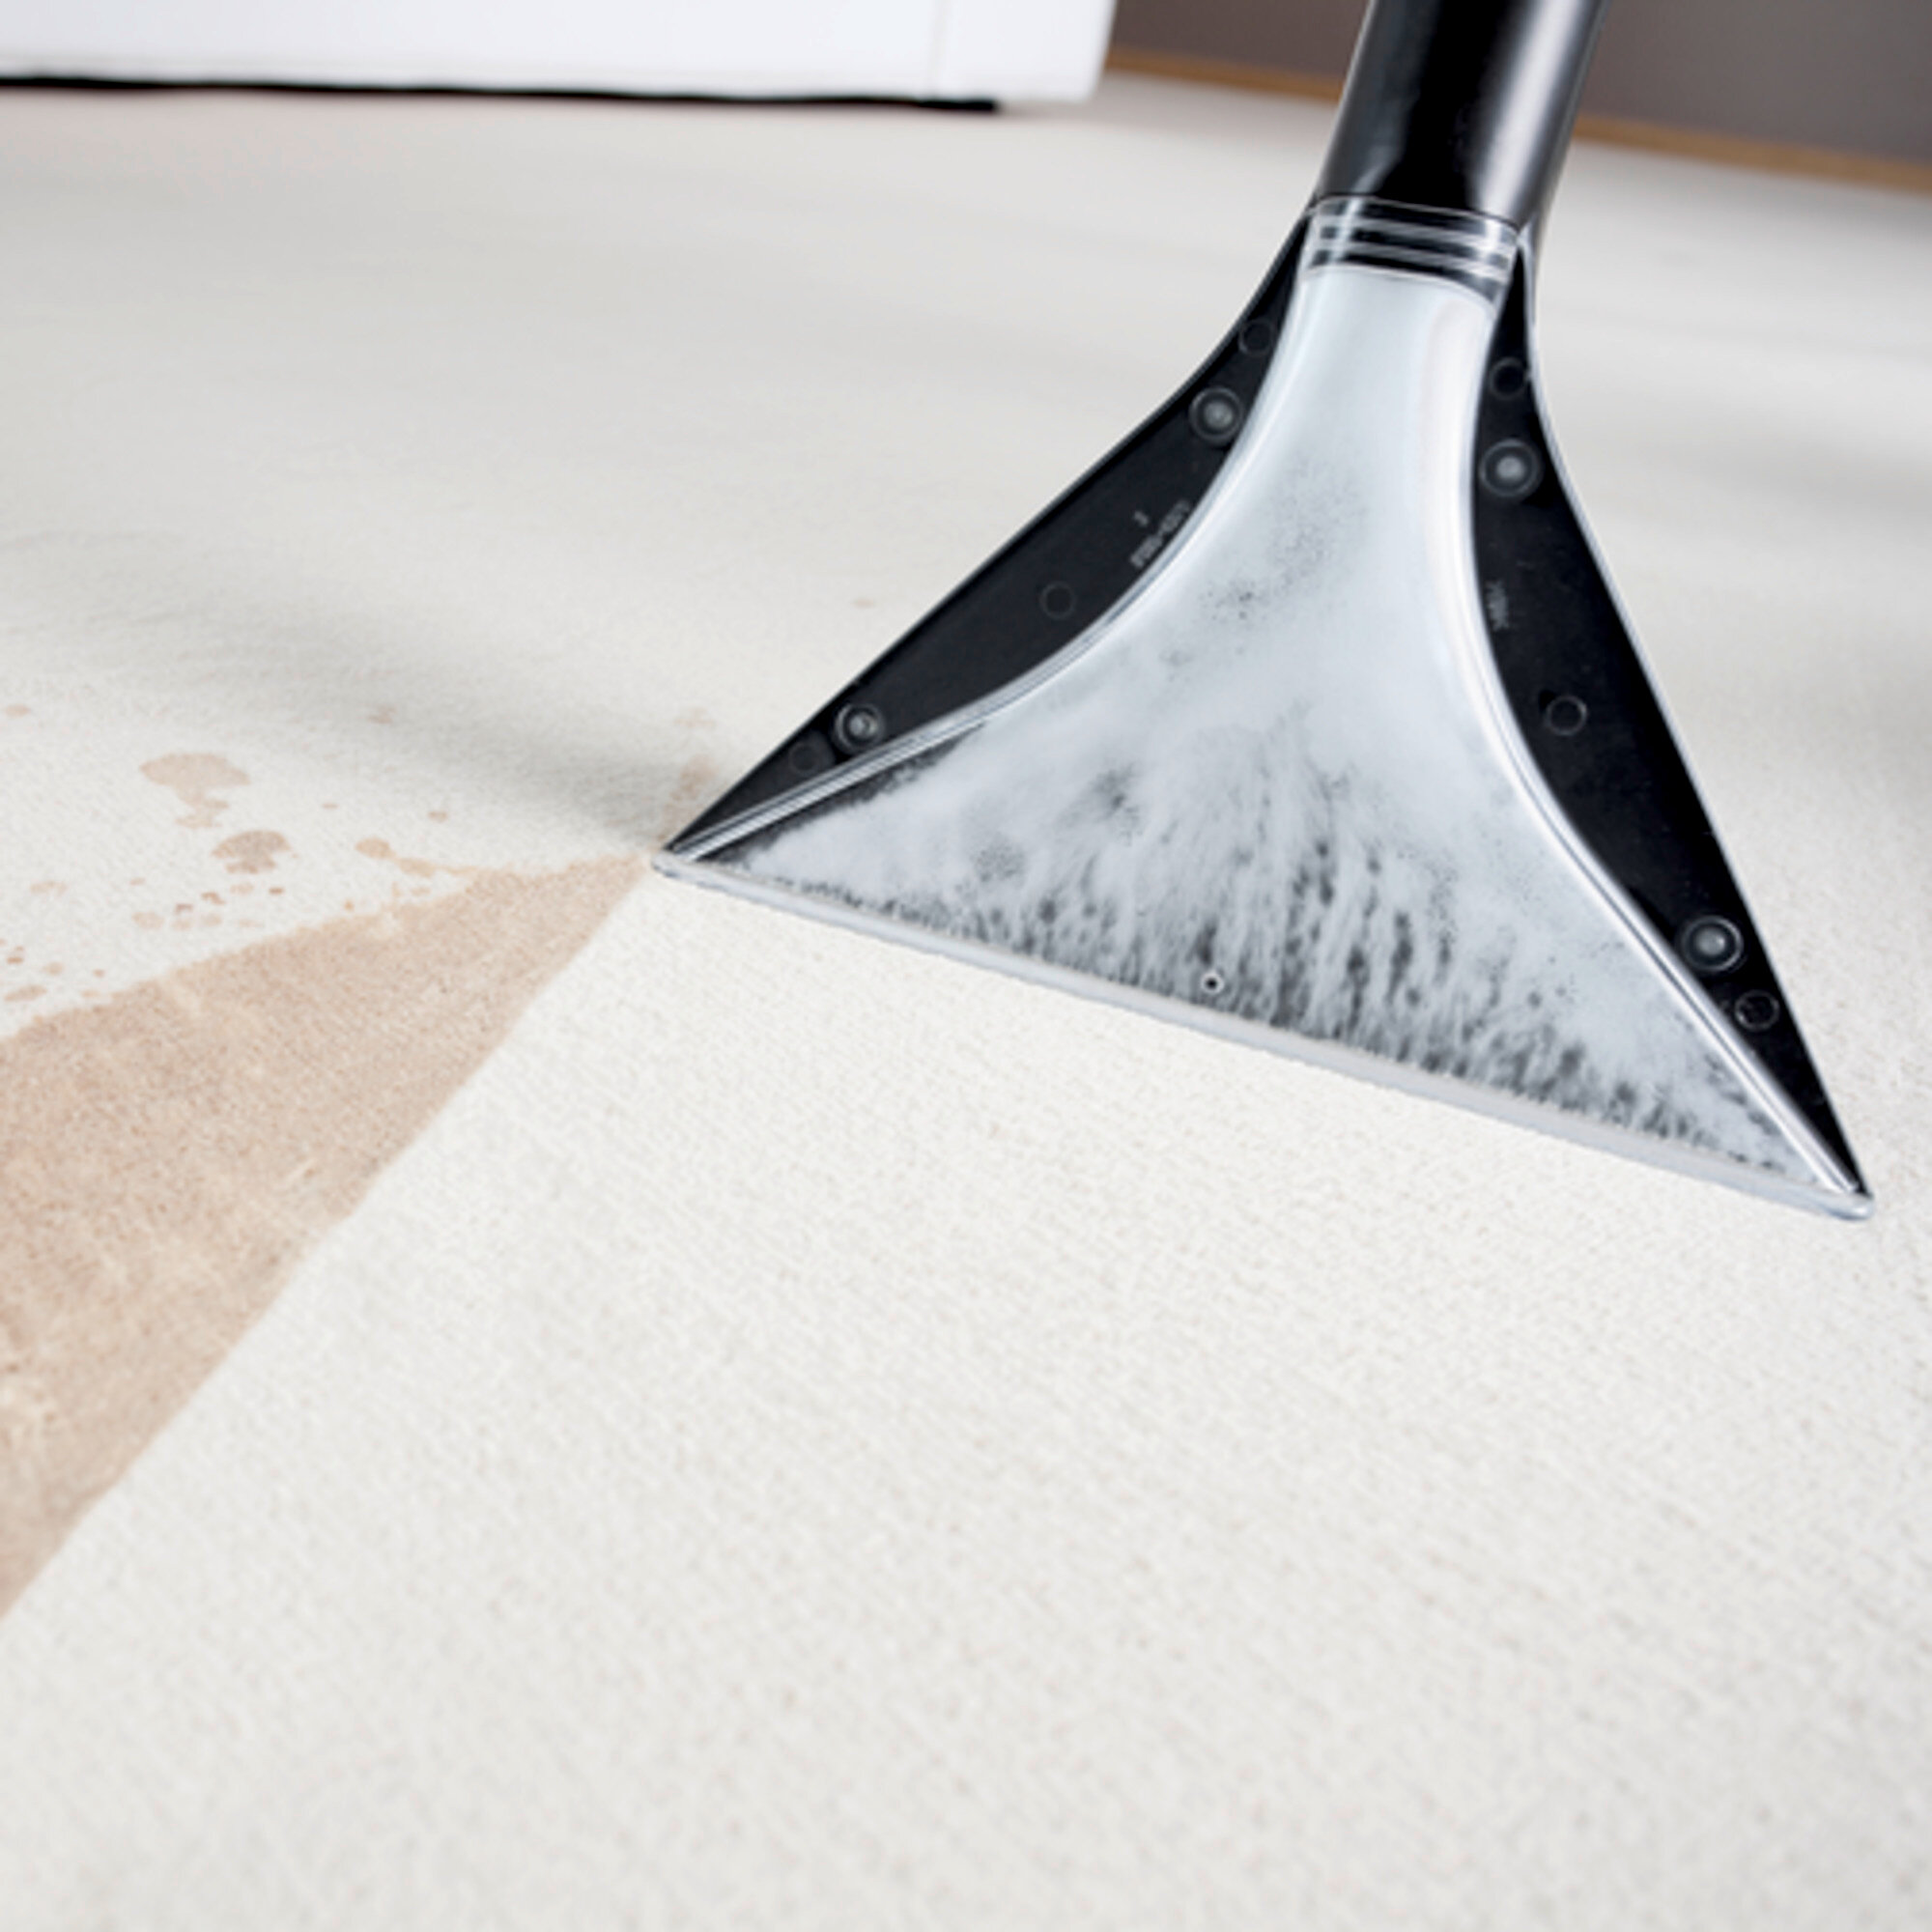 Carpet cleaner SE 5.100: Kärcher nozzle technology